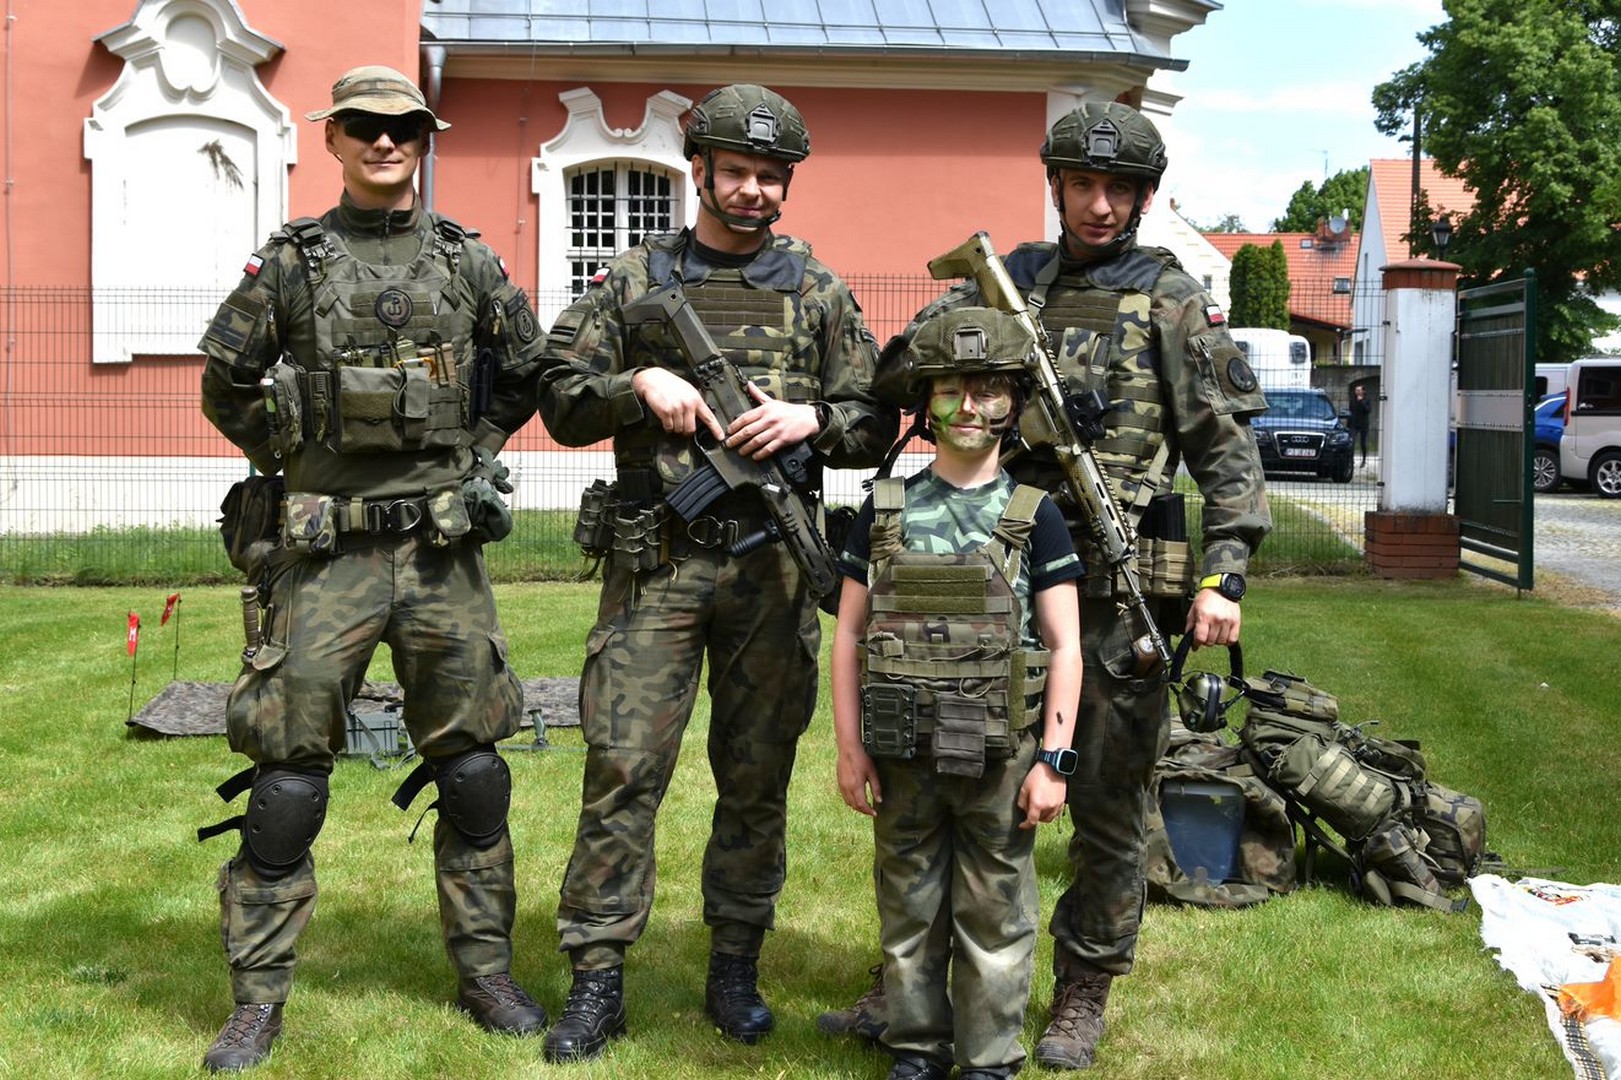 3 żołnierzy w mundurach i hełmach z karabinami stoją z chłopcem w przebraniu wojskowym.